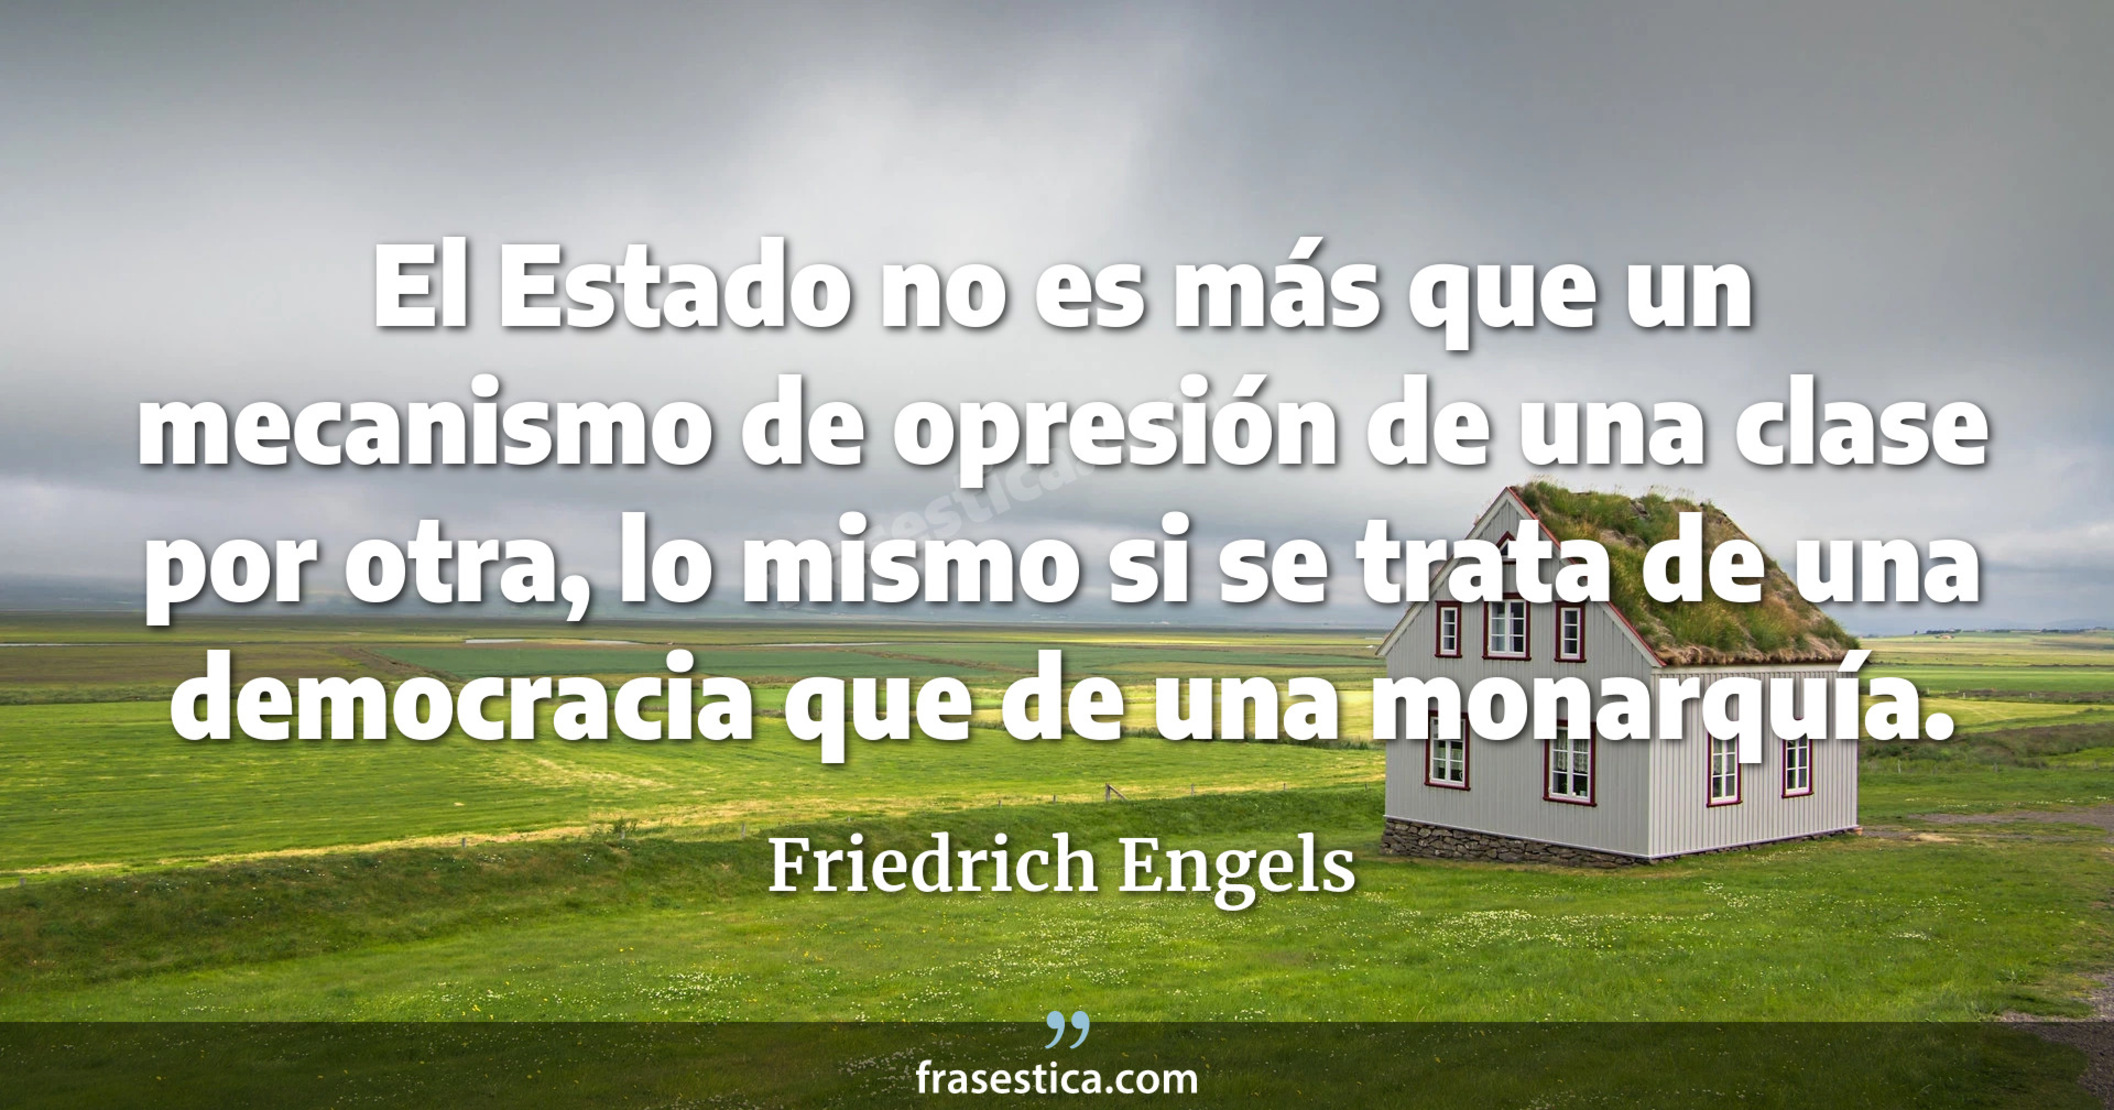 El Estado no es más que un mecanismo de opresión de una clase por otra, lo mismo si se trata de una democracia que de una monarquía. - Friedrich Engels